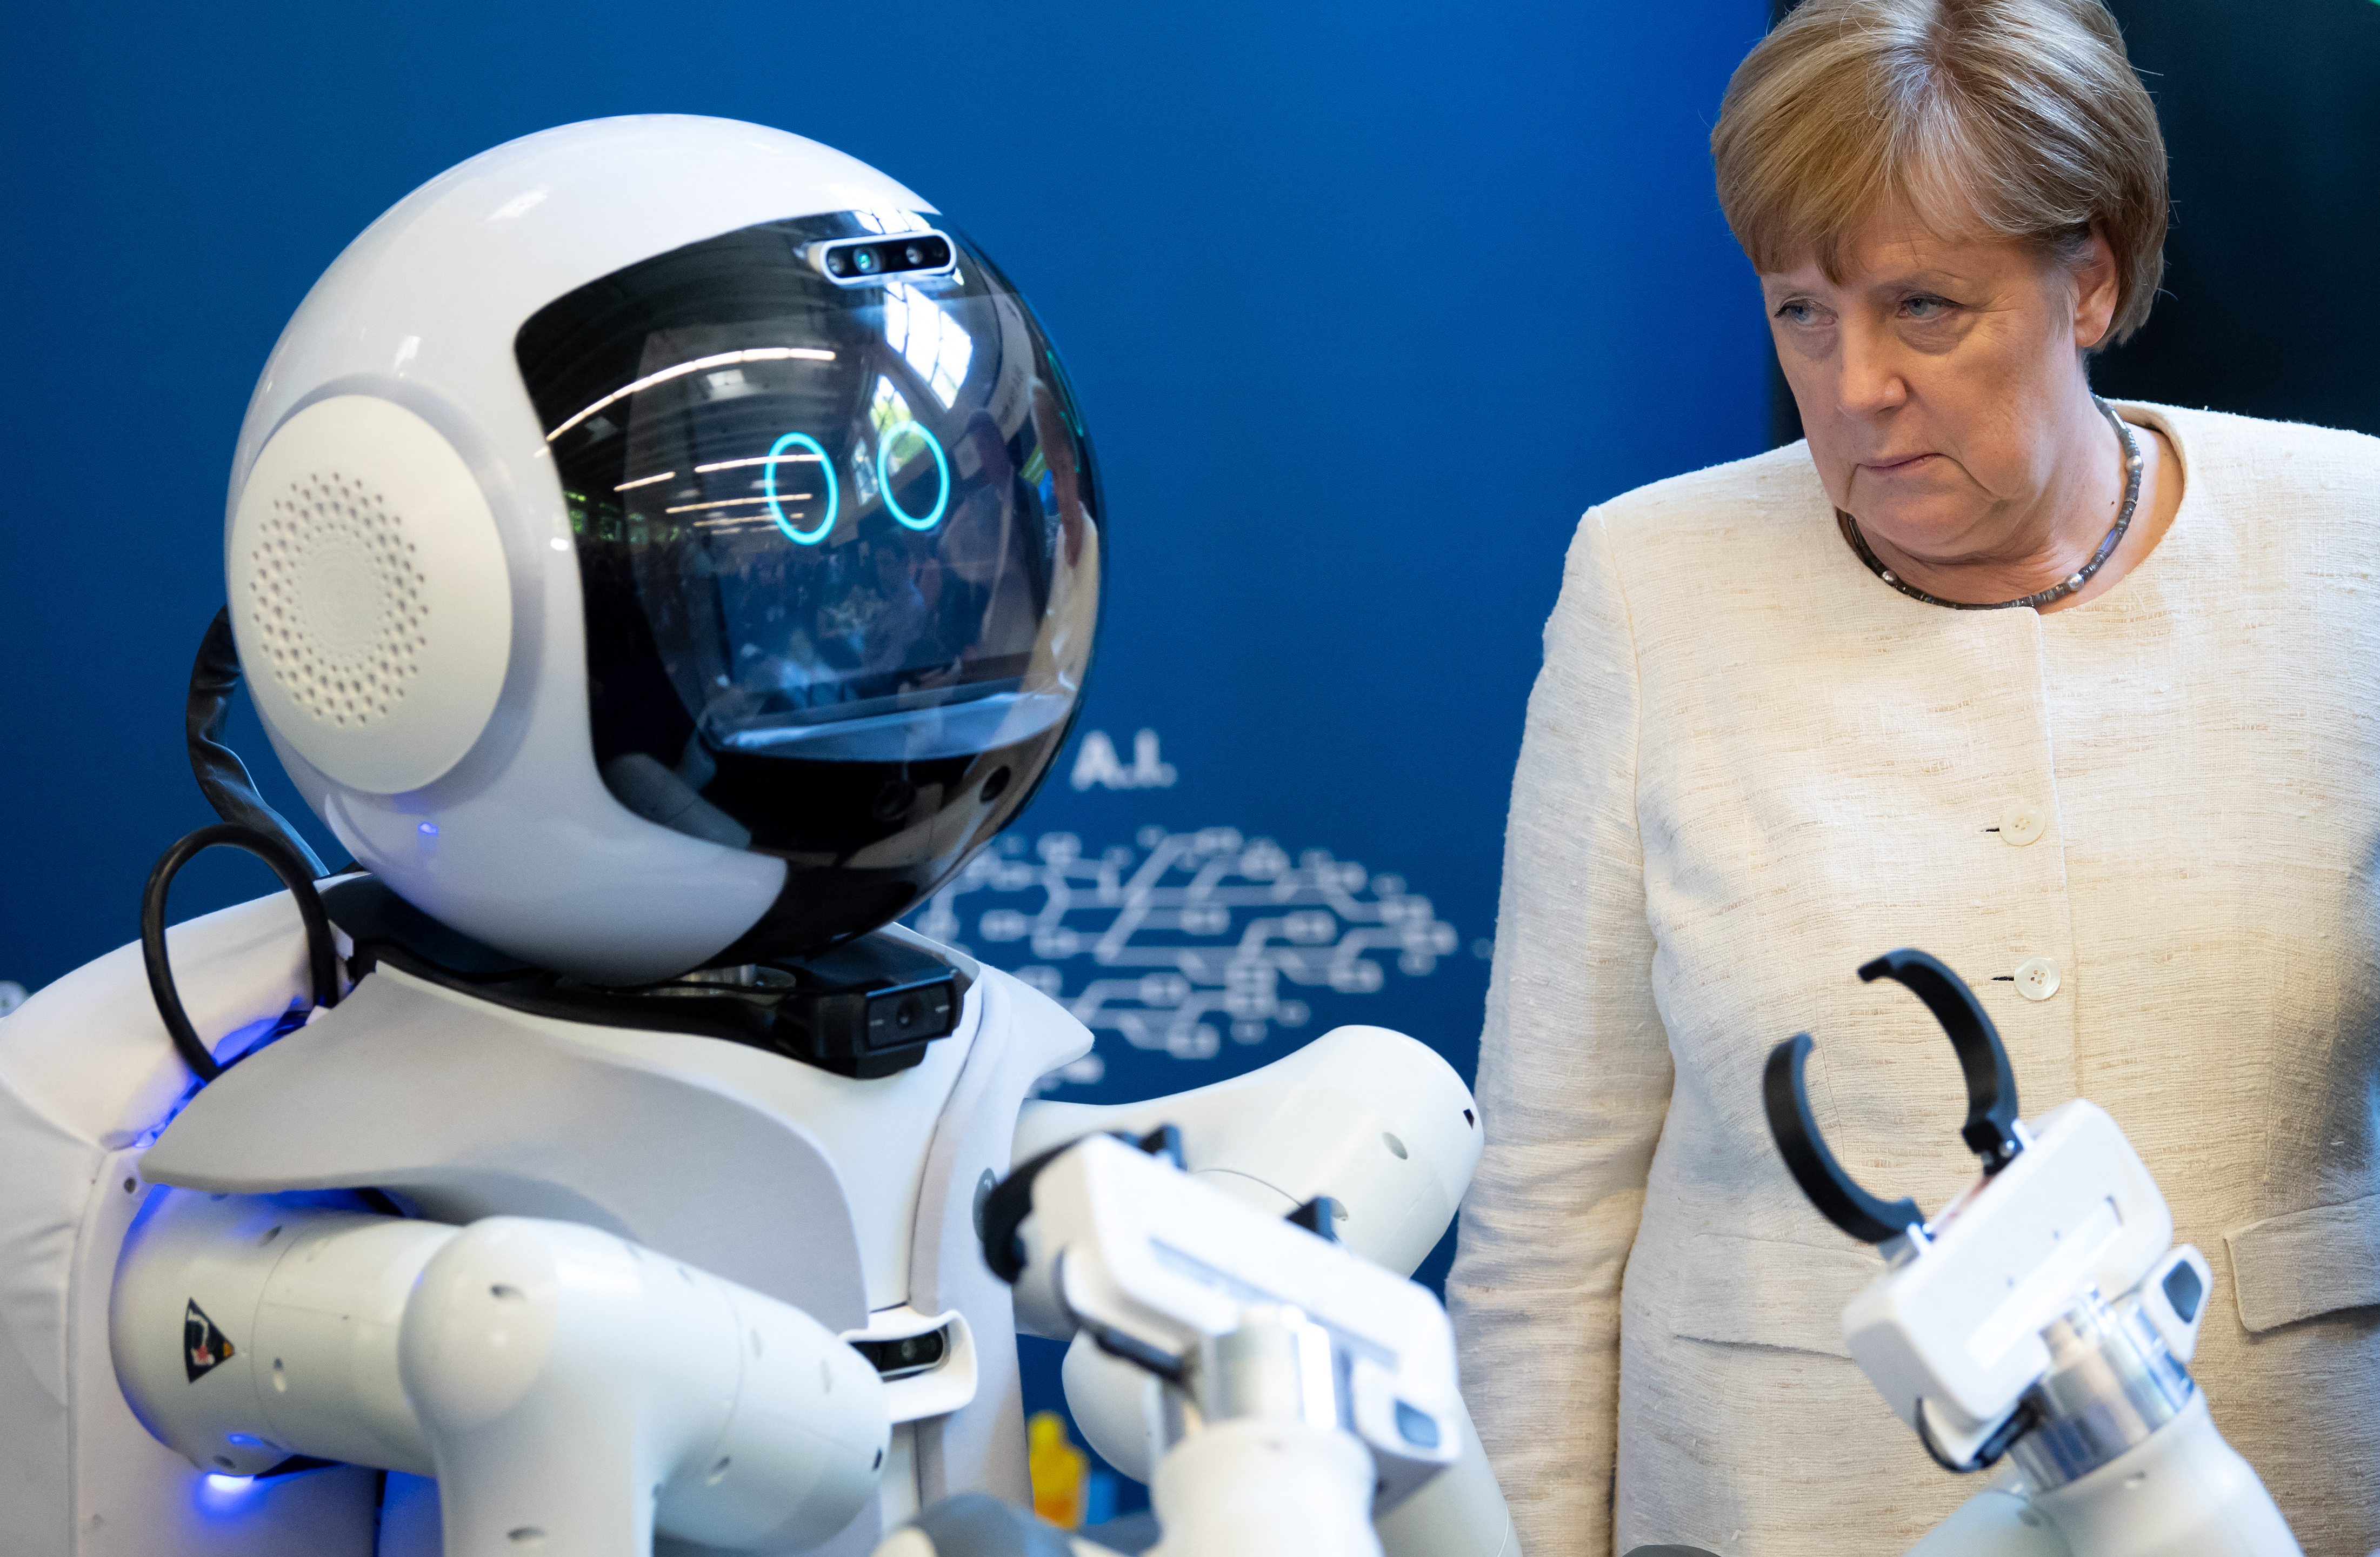 Egy felmérés szerint az európaiak 51 százaléka lecserélné a parlamenti képviselőit mesterséges intelligenciára